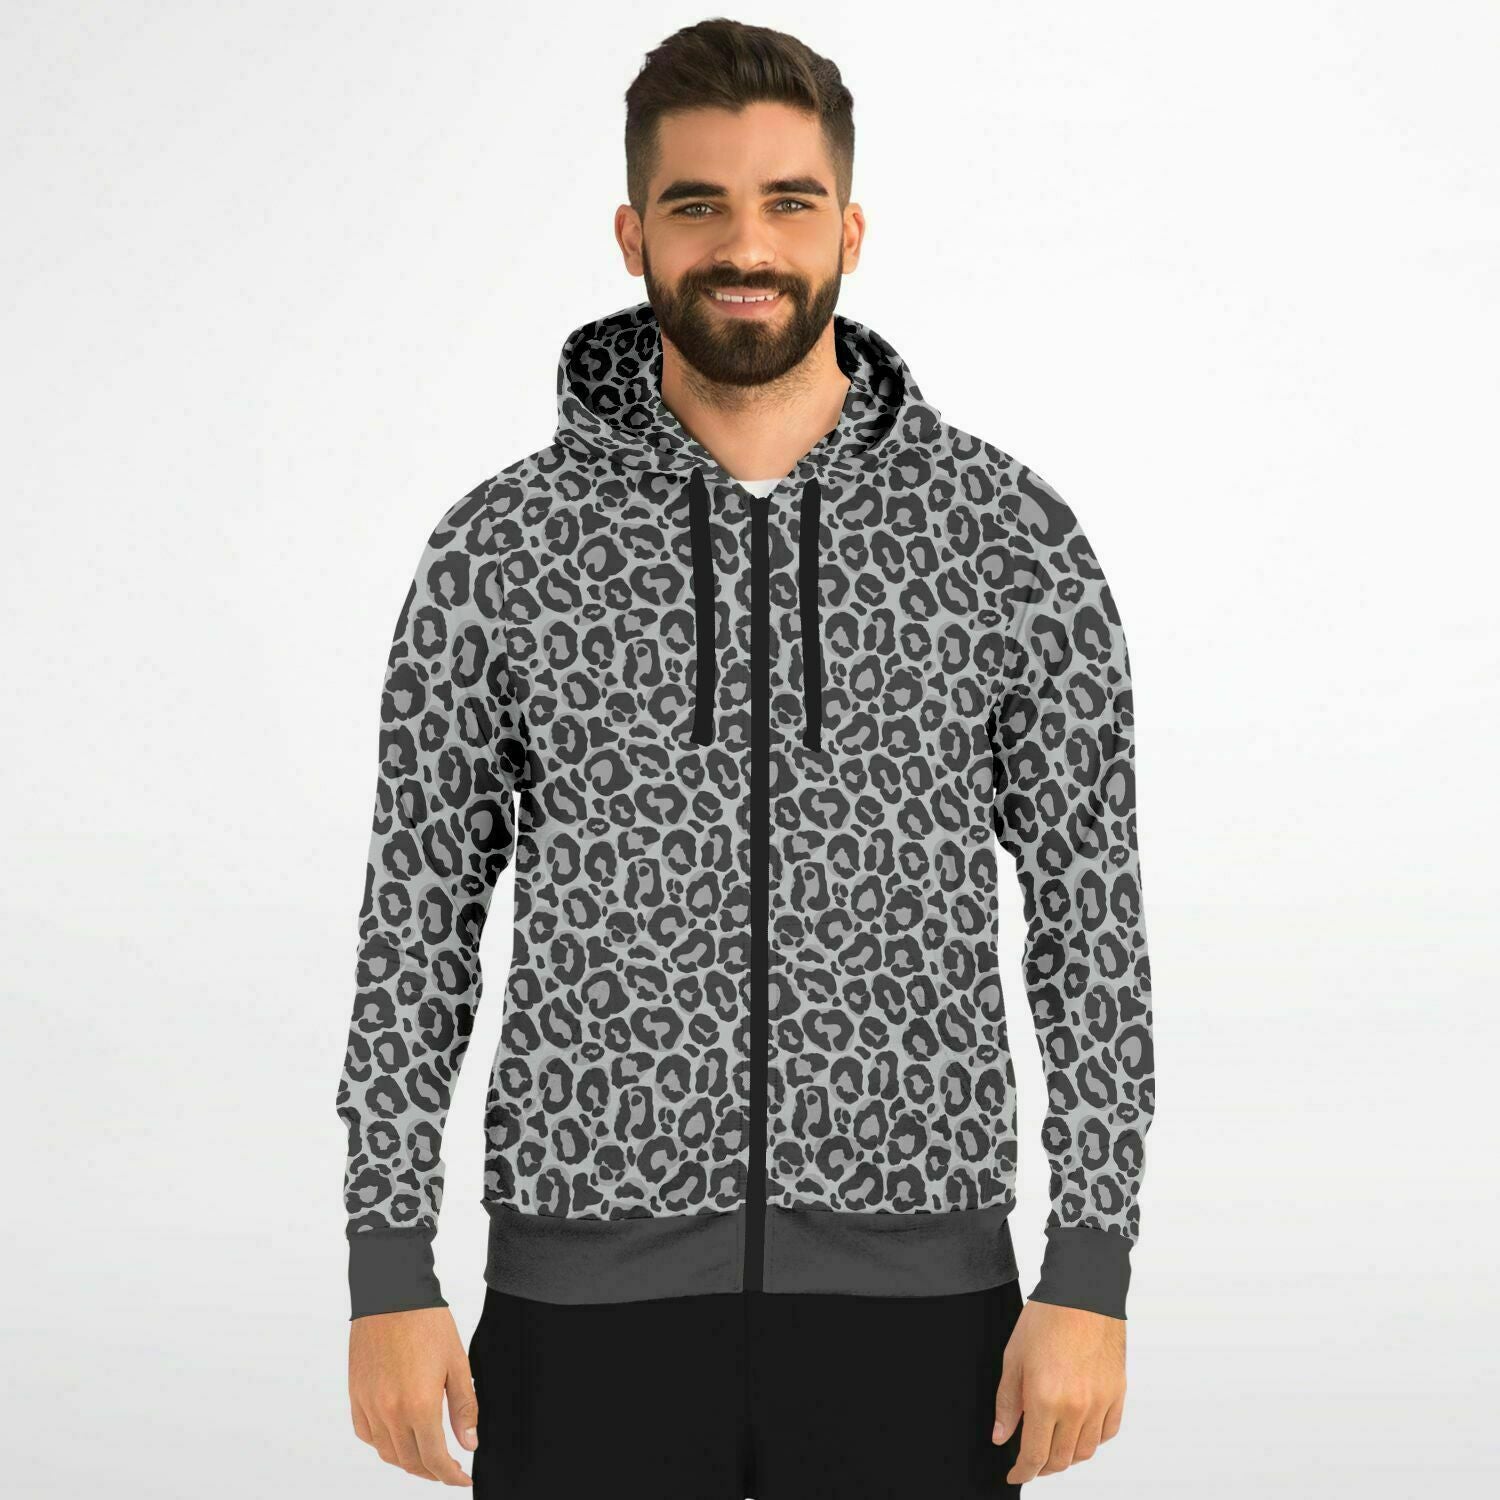 Grey Leopard Zip Up Hoodie, Animal Print Front Zipper Pocket Men Women  Unisex Adult Aesthetic Cotton Fleece Hooded Sweatshirt